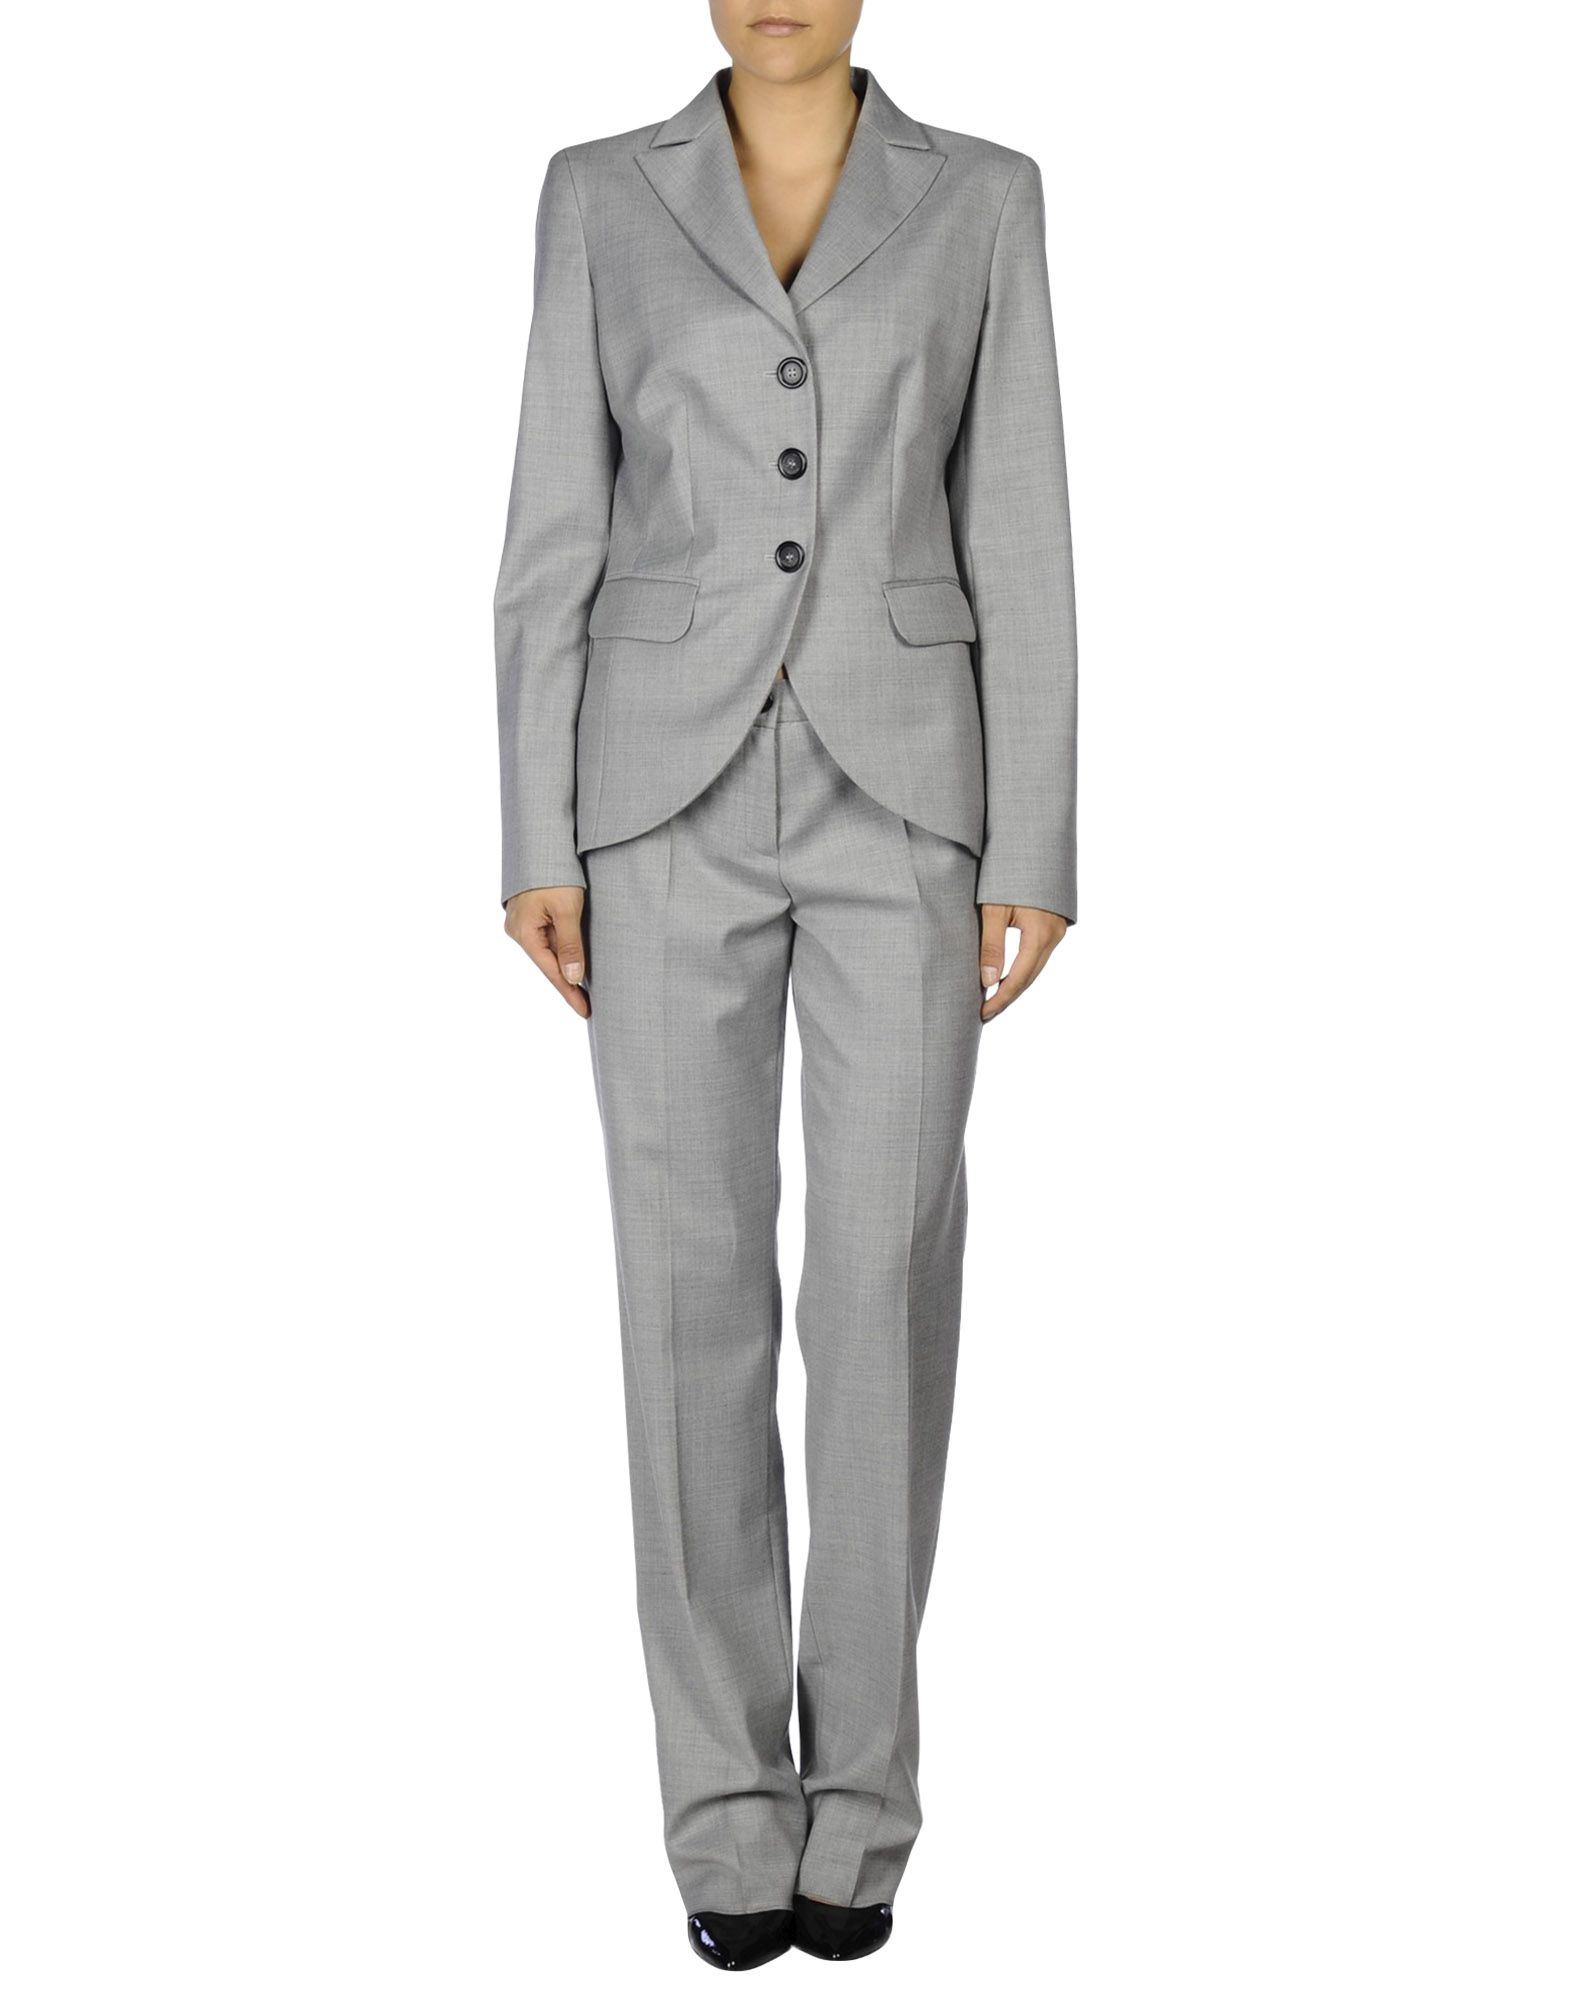 Lyst - Caractere Women's Suit in Gray